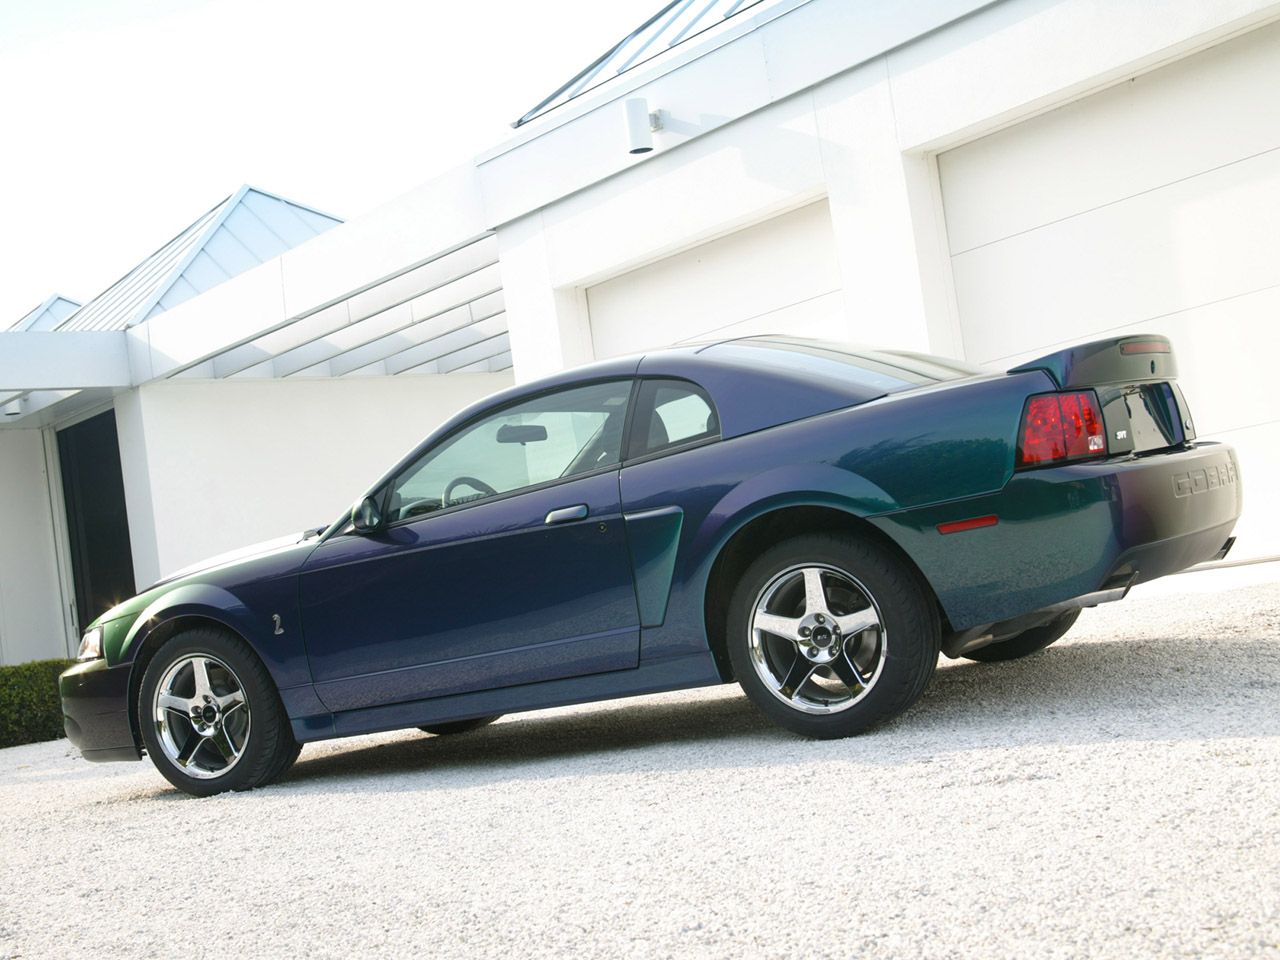 2003 - 2004 Ford SVT Mustang Cobra